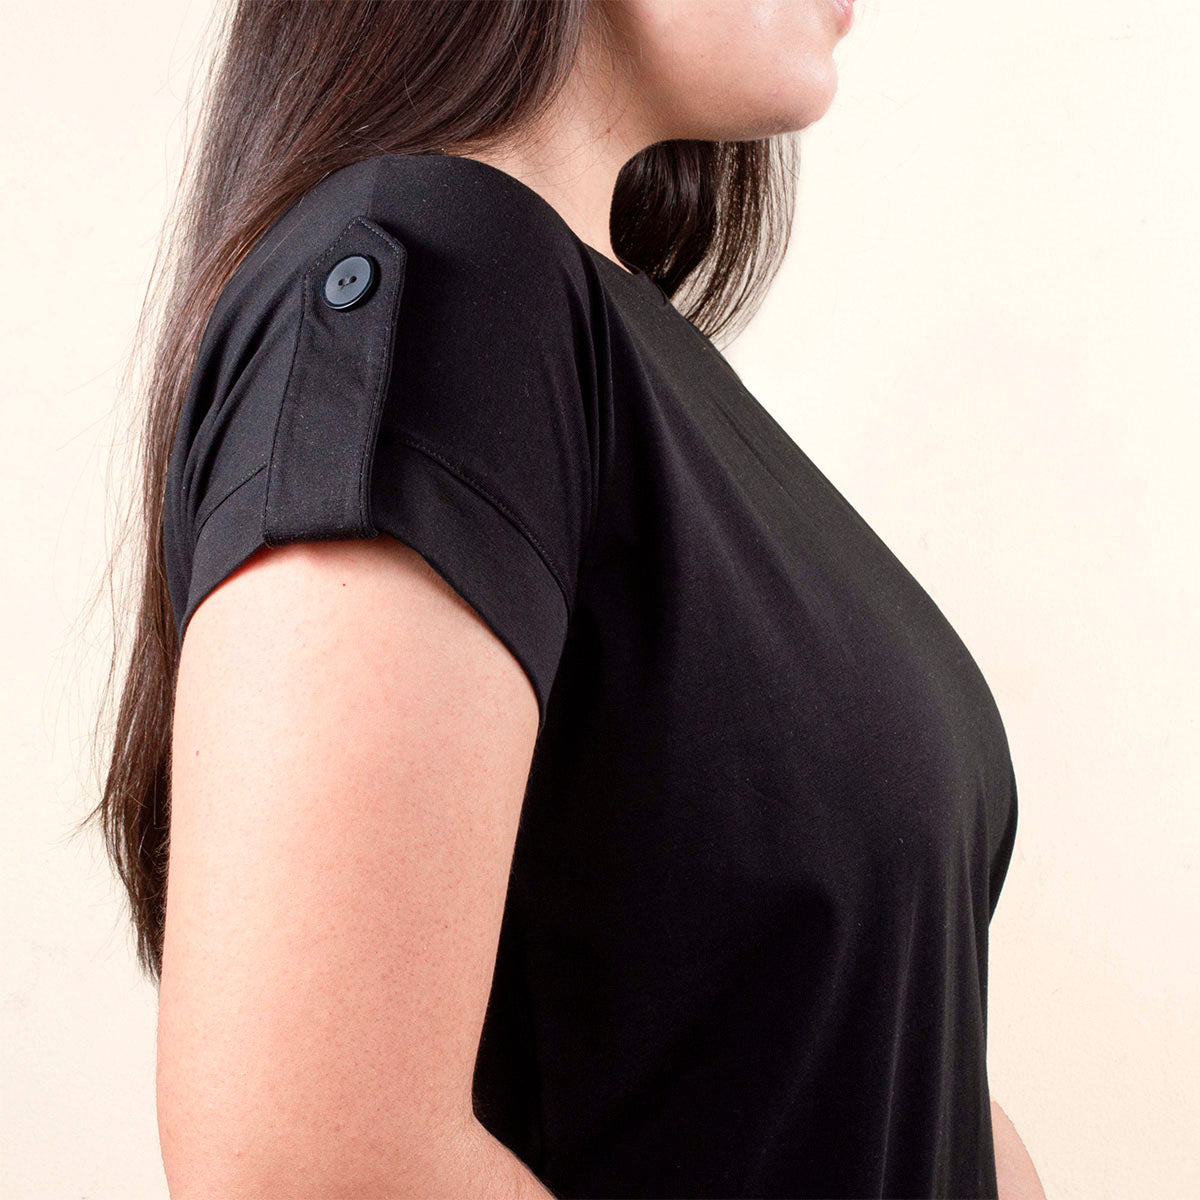 Camiseta básica color negro con botones en hombros